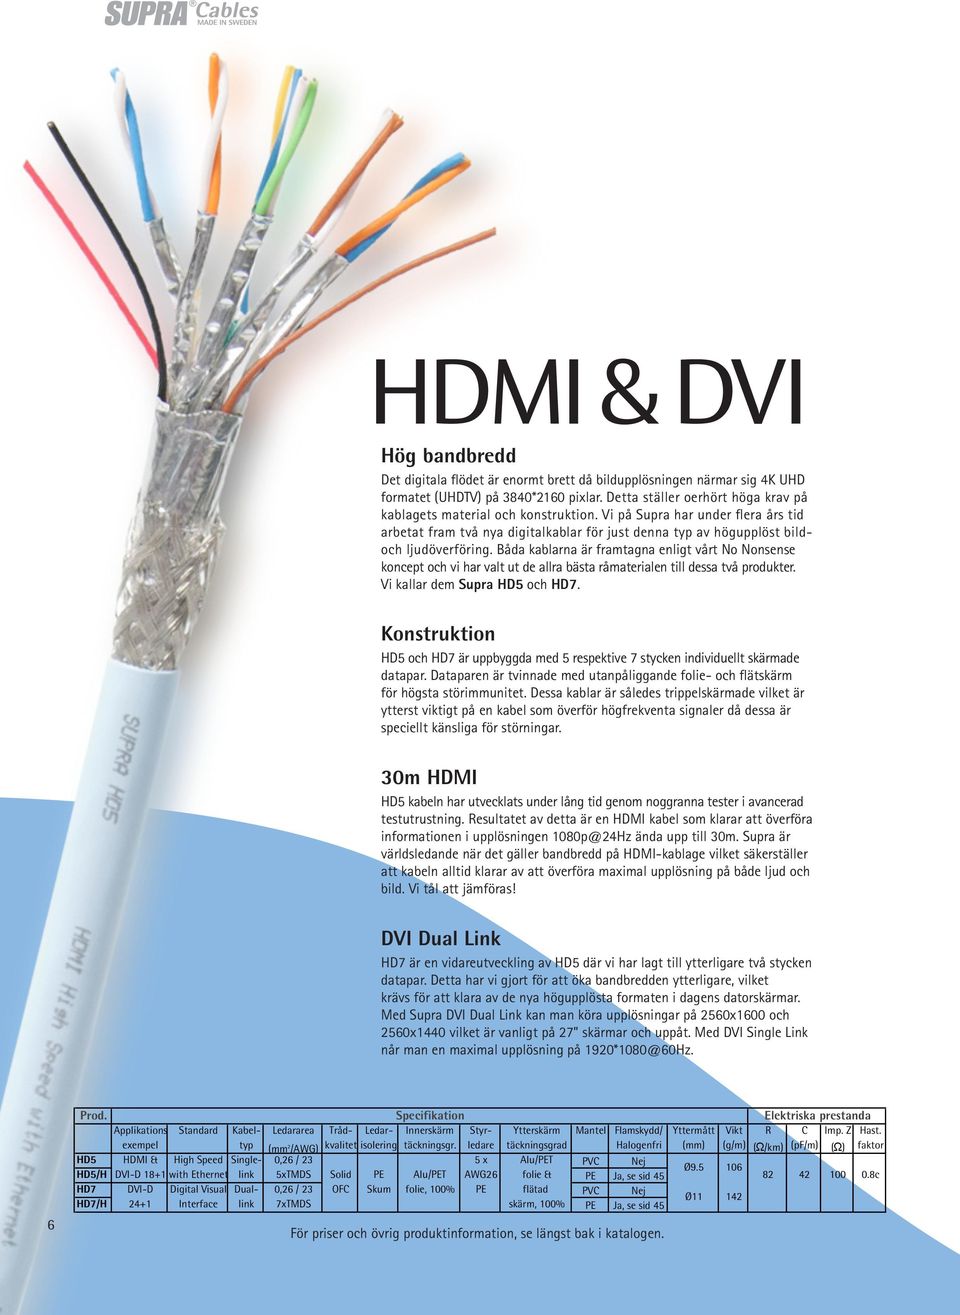 Båda kablarna är framtagna enligt vårt No Nonsense koncept och vi har valt ut de allra bästa råmaterialen till dessa två produkter. Vi kallar dem Supra HD5 och HD7.